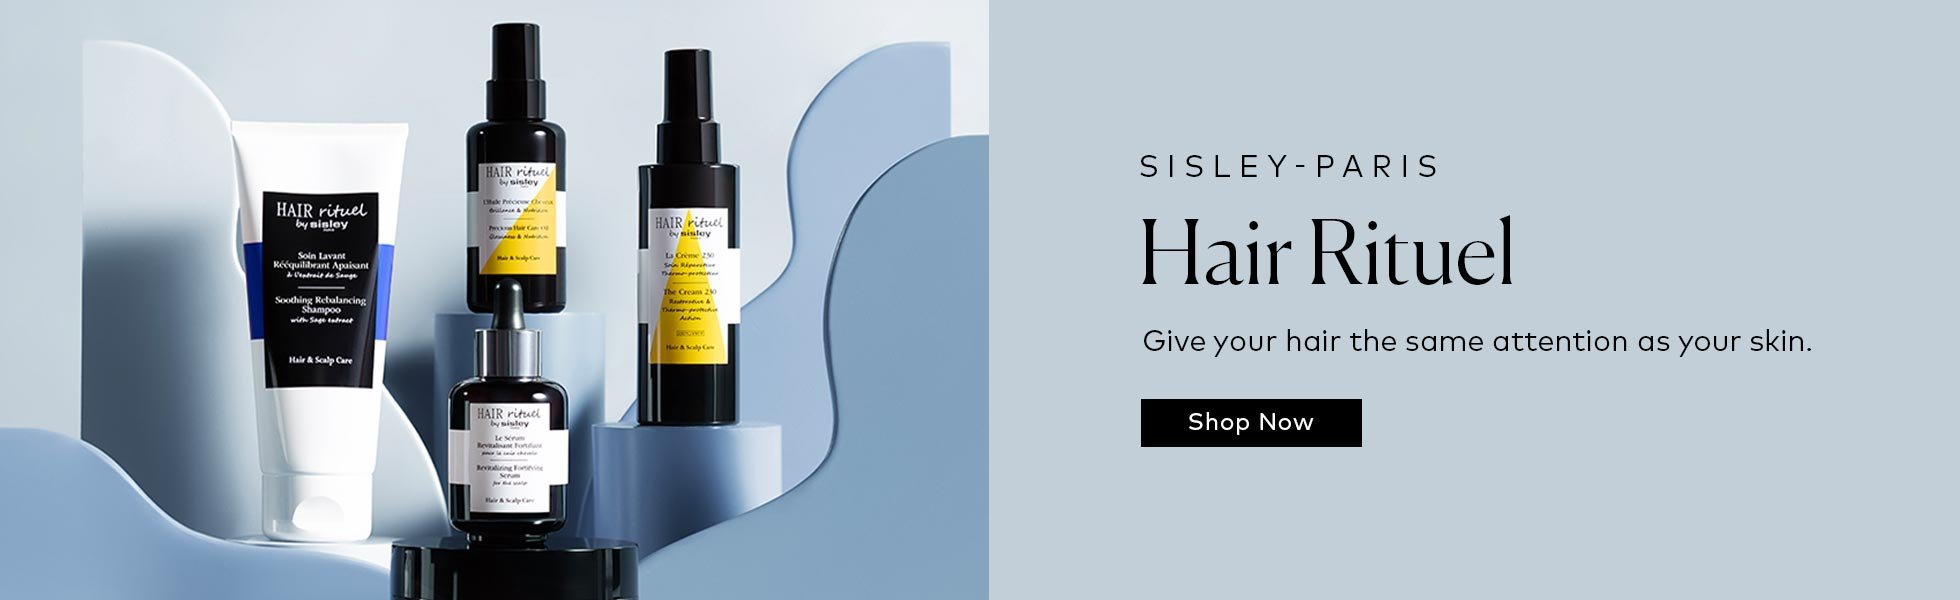 Shop Sisley-Paris Hair Rituel at Beautylish.com